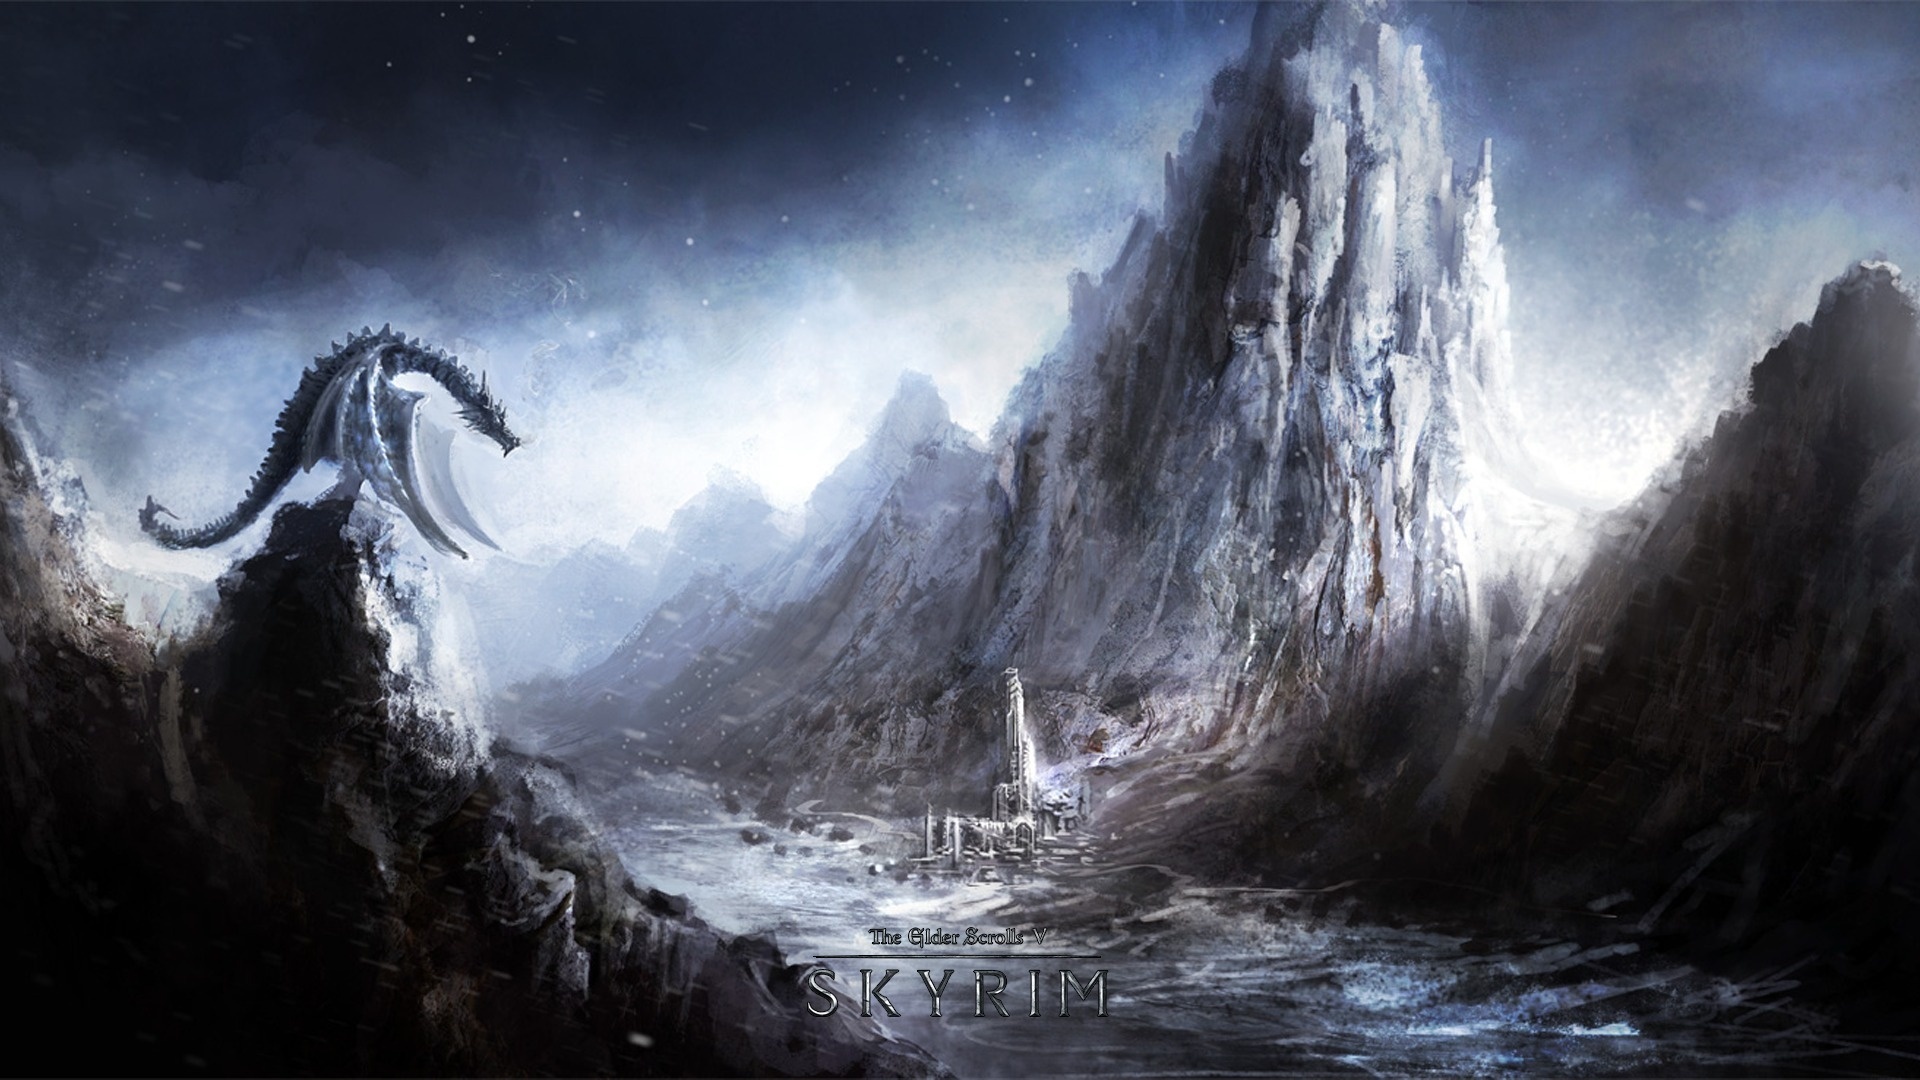 The Elder Scrolls V: Skyrim Full HD Wallpaper and Background Image